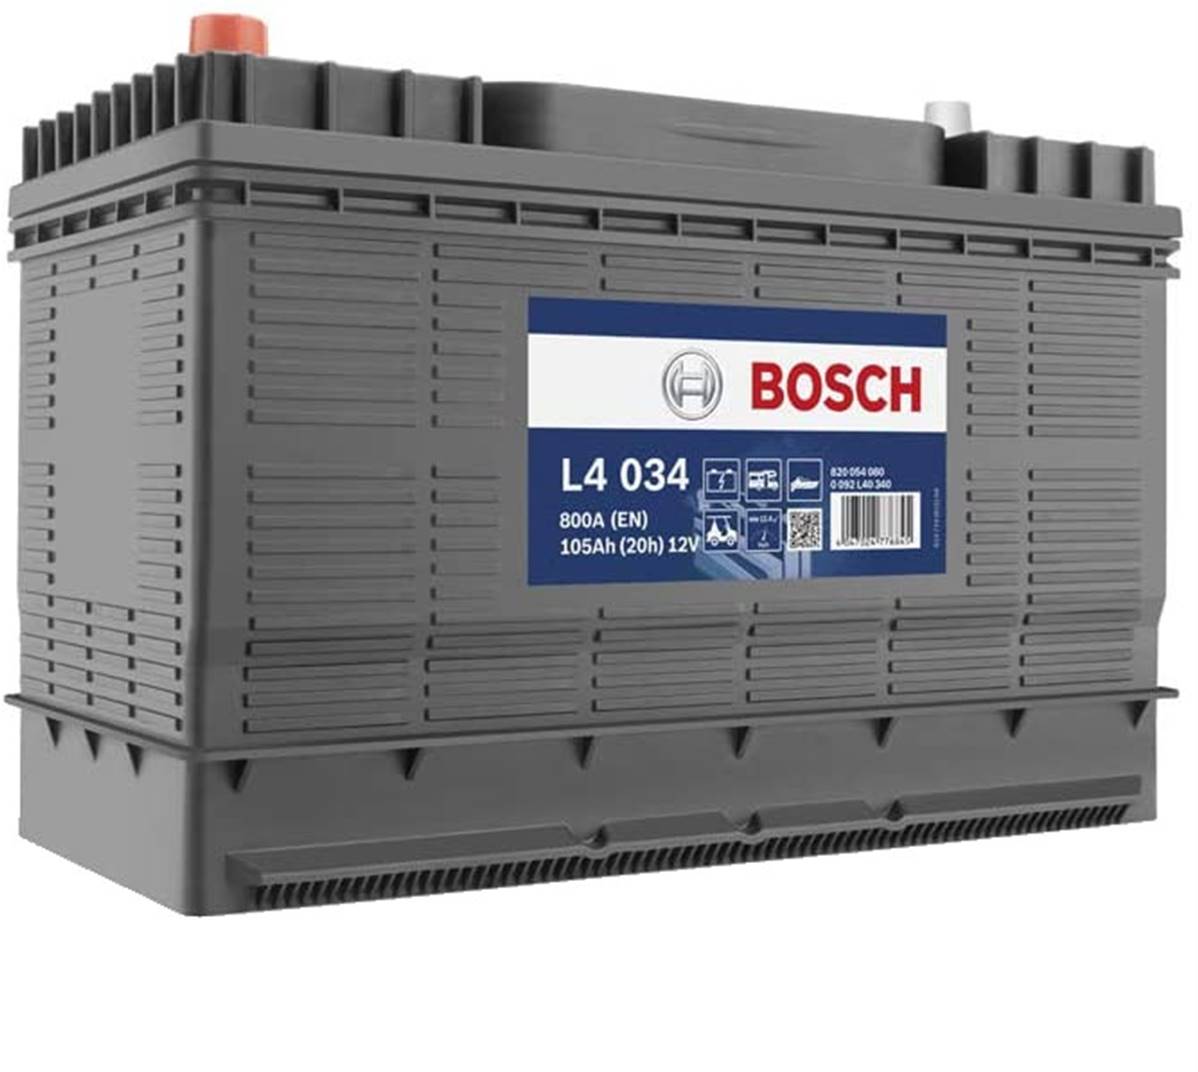 Batterie BOSCH 12V L4034 120ah C100h 105ah C20h décharge lente LFS105 -  Achat Batterie